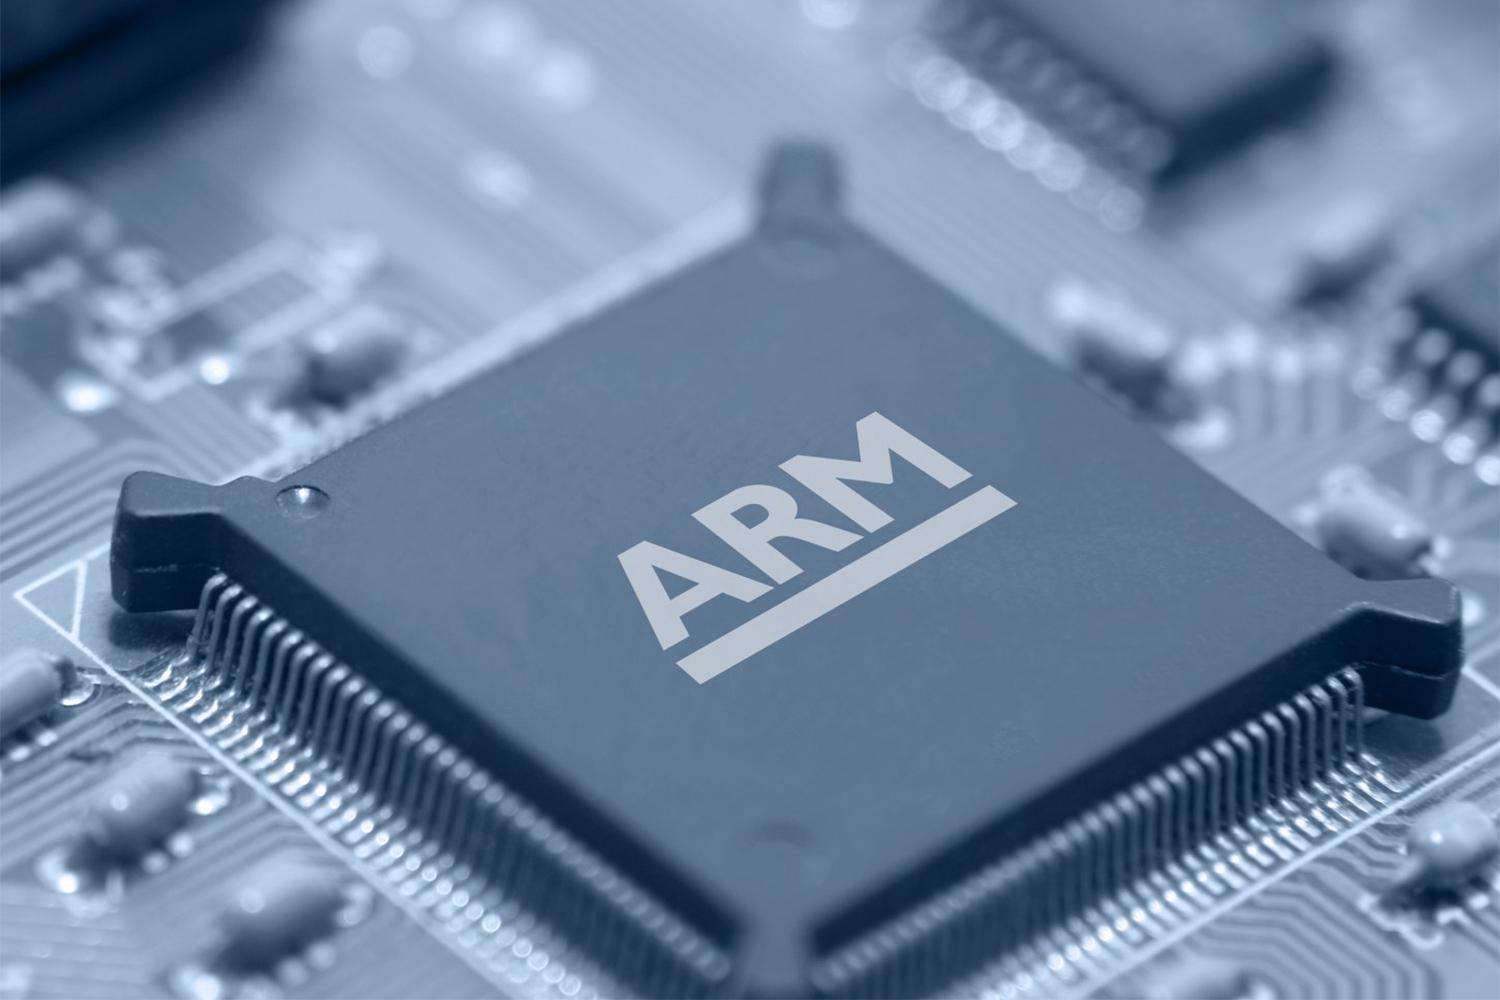 英伟达400亿美元收购ARM！芯片行业最大收购案